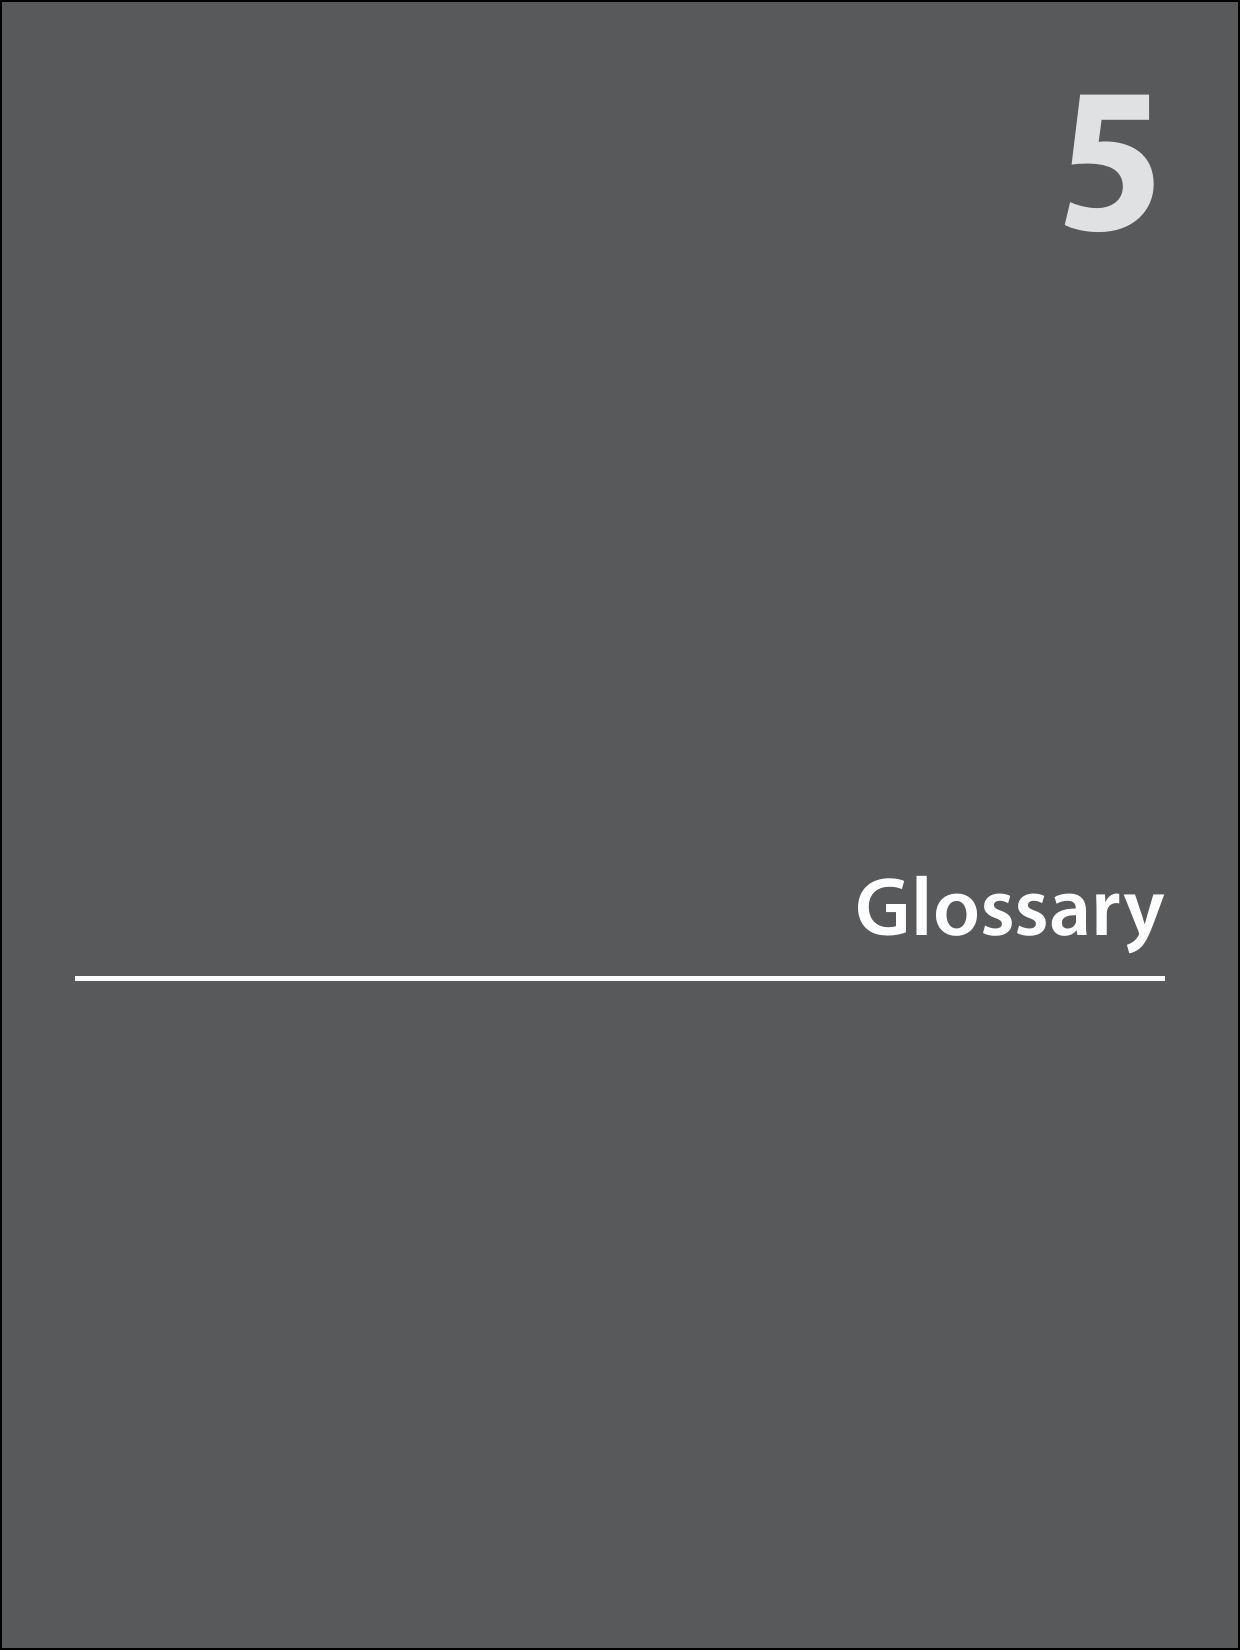 Glossary5